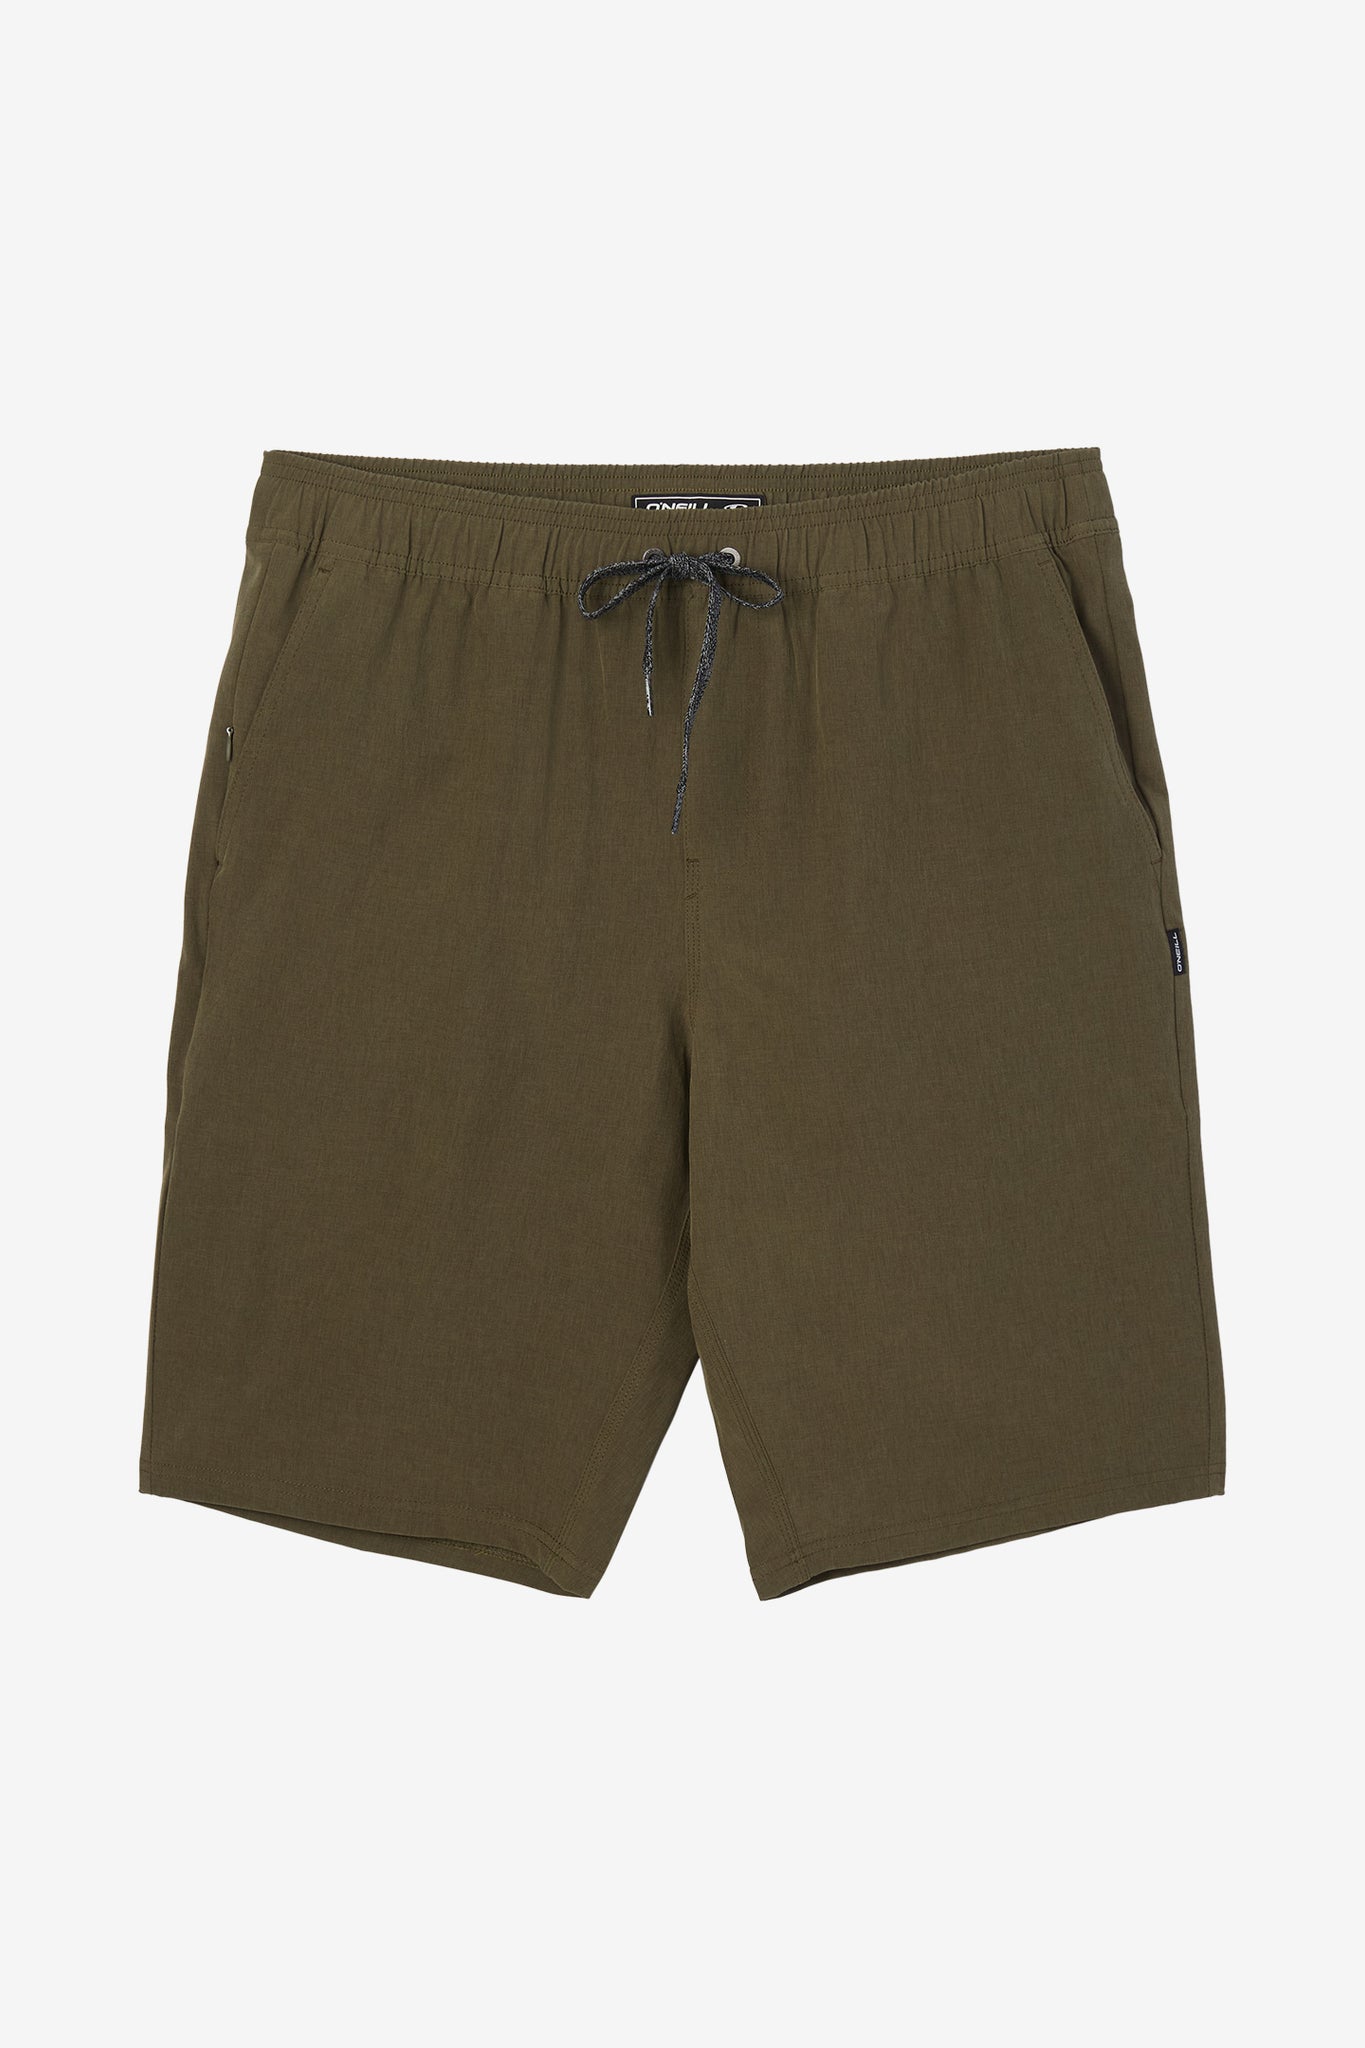 Neil Barrett Kids elasticated-waistband shorts - Green